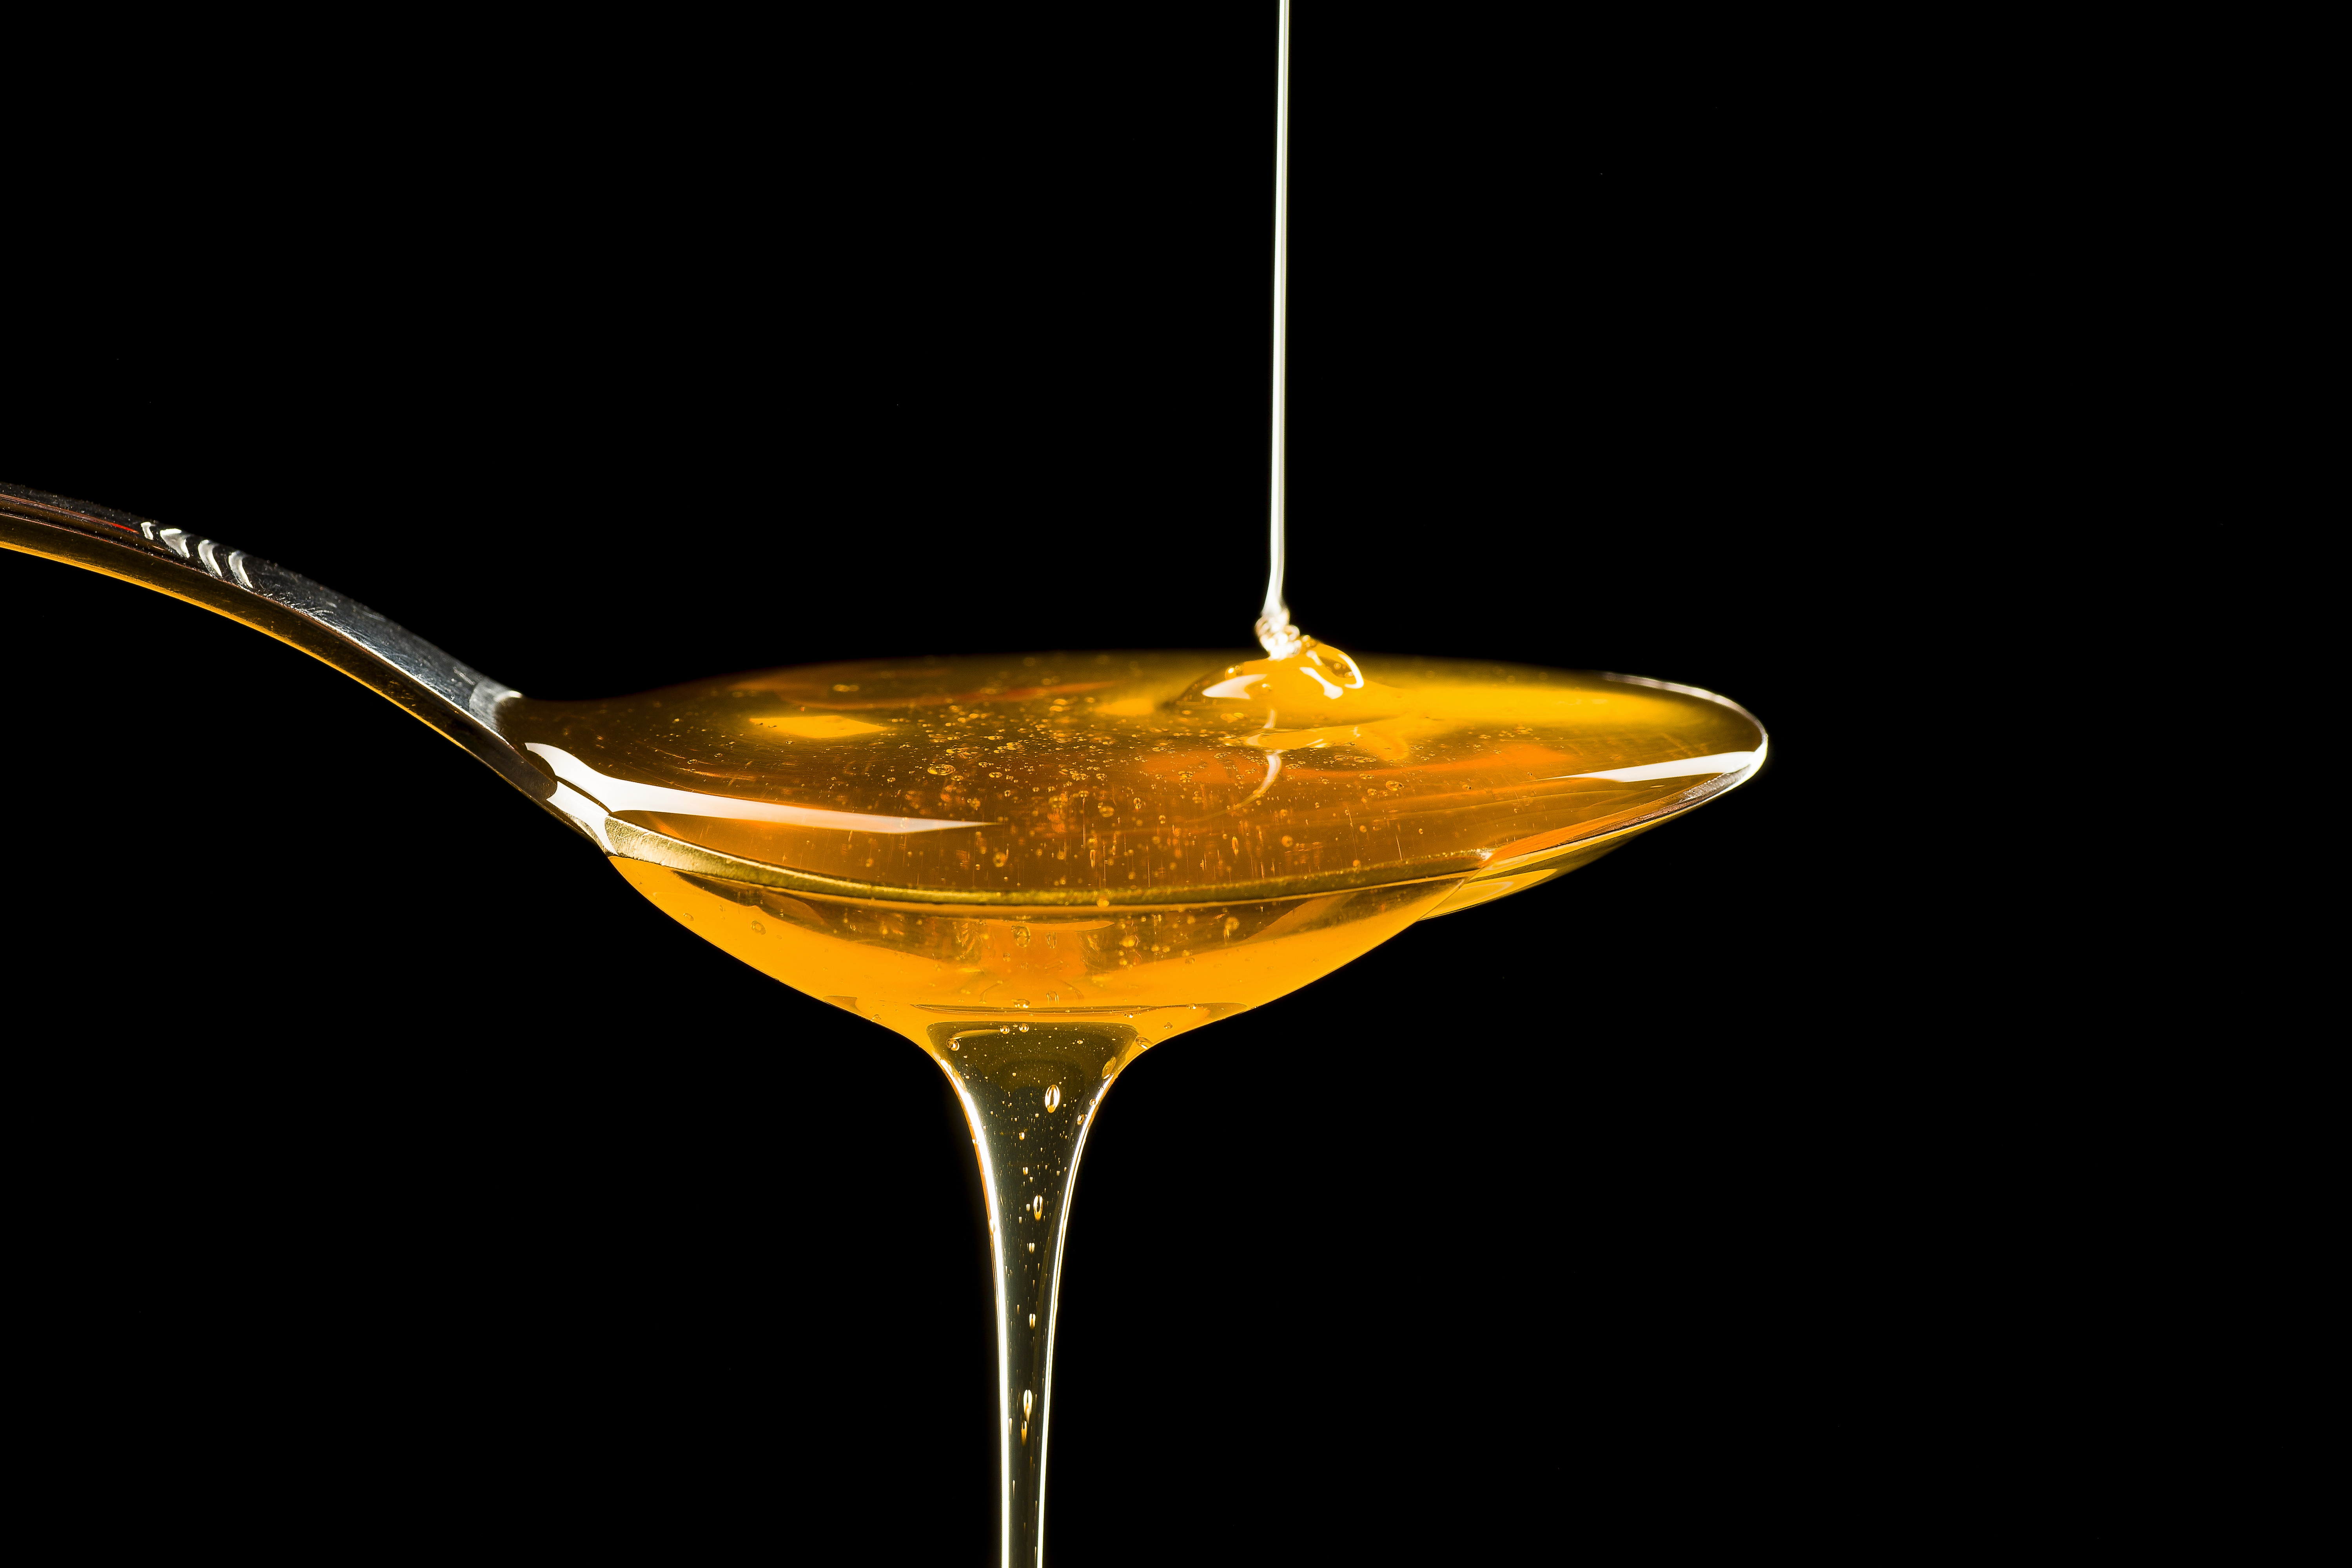 Des miels aphrodisiaques jugés illégaux et dangereux par les autorités  sanitaires